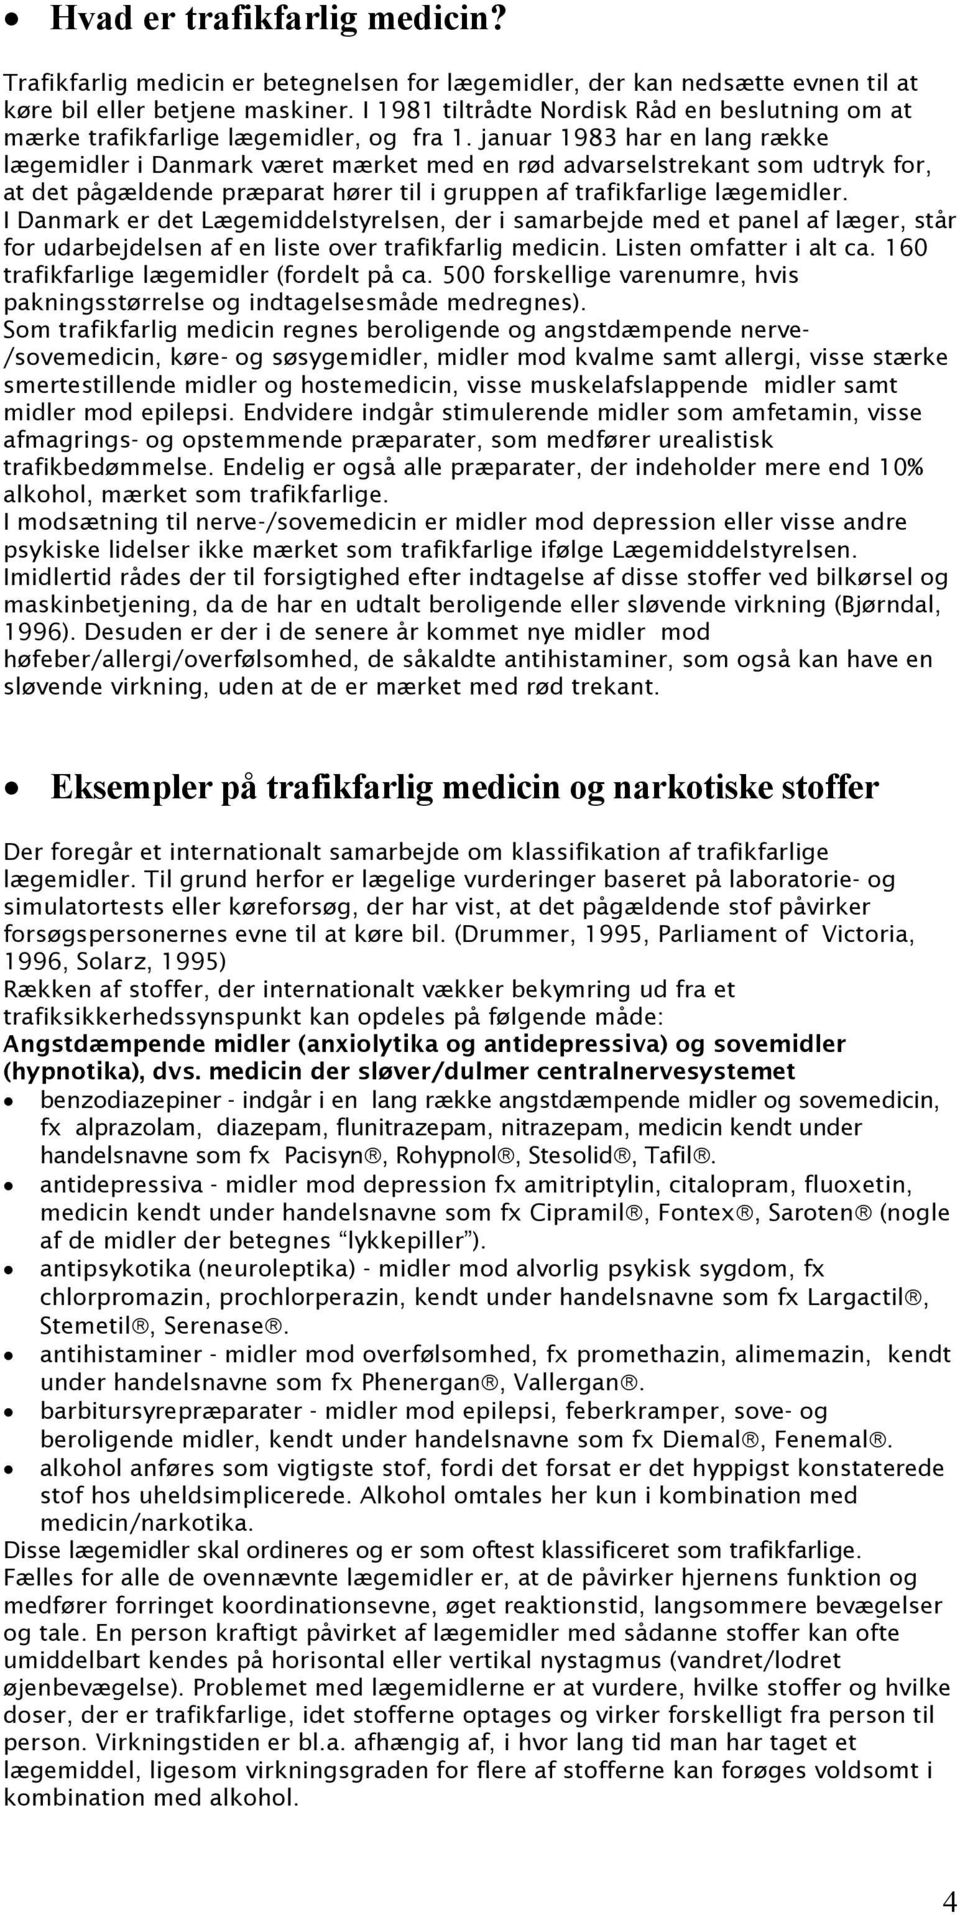 januar 1983 har en lang række lægemidler i Danmark været mærket med en rød advarselstrekant som udtryk for, at det pågældende præparat hører til i gruppen af trafikfarlige lægemidler.